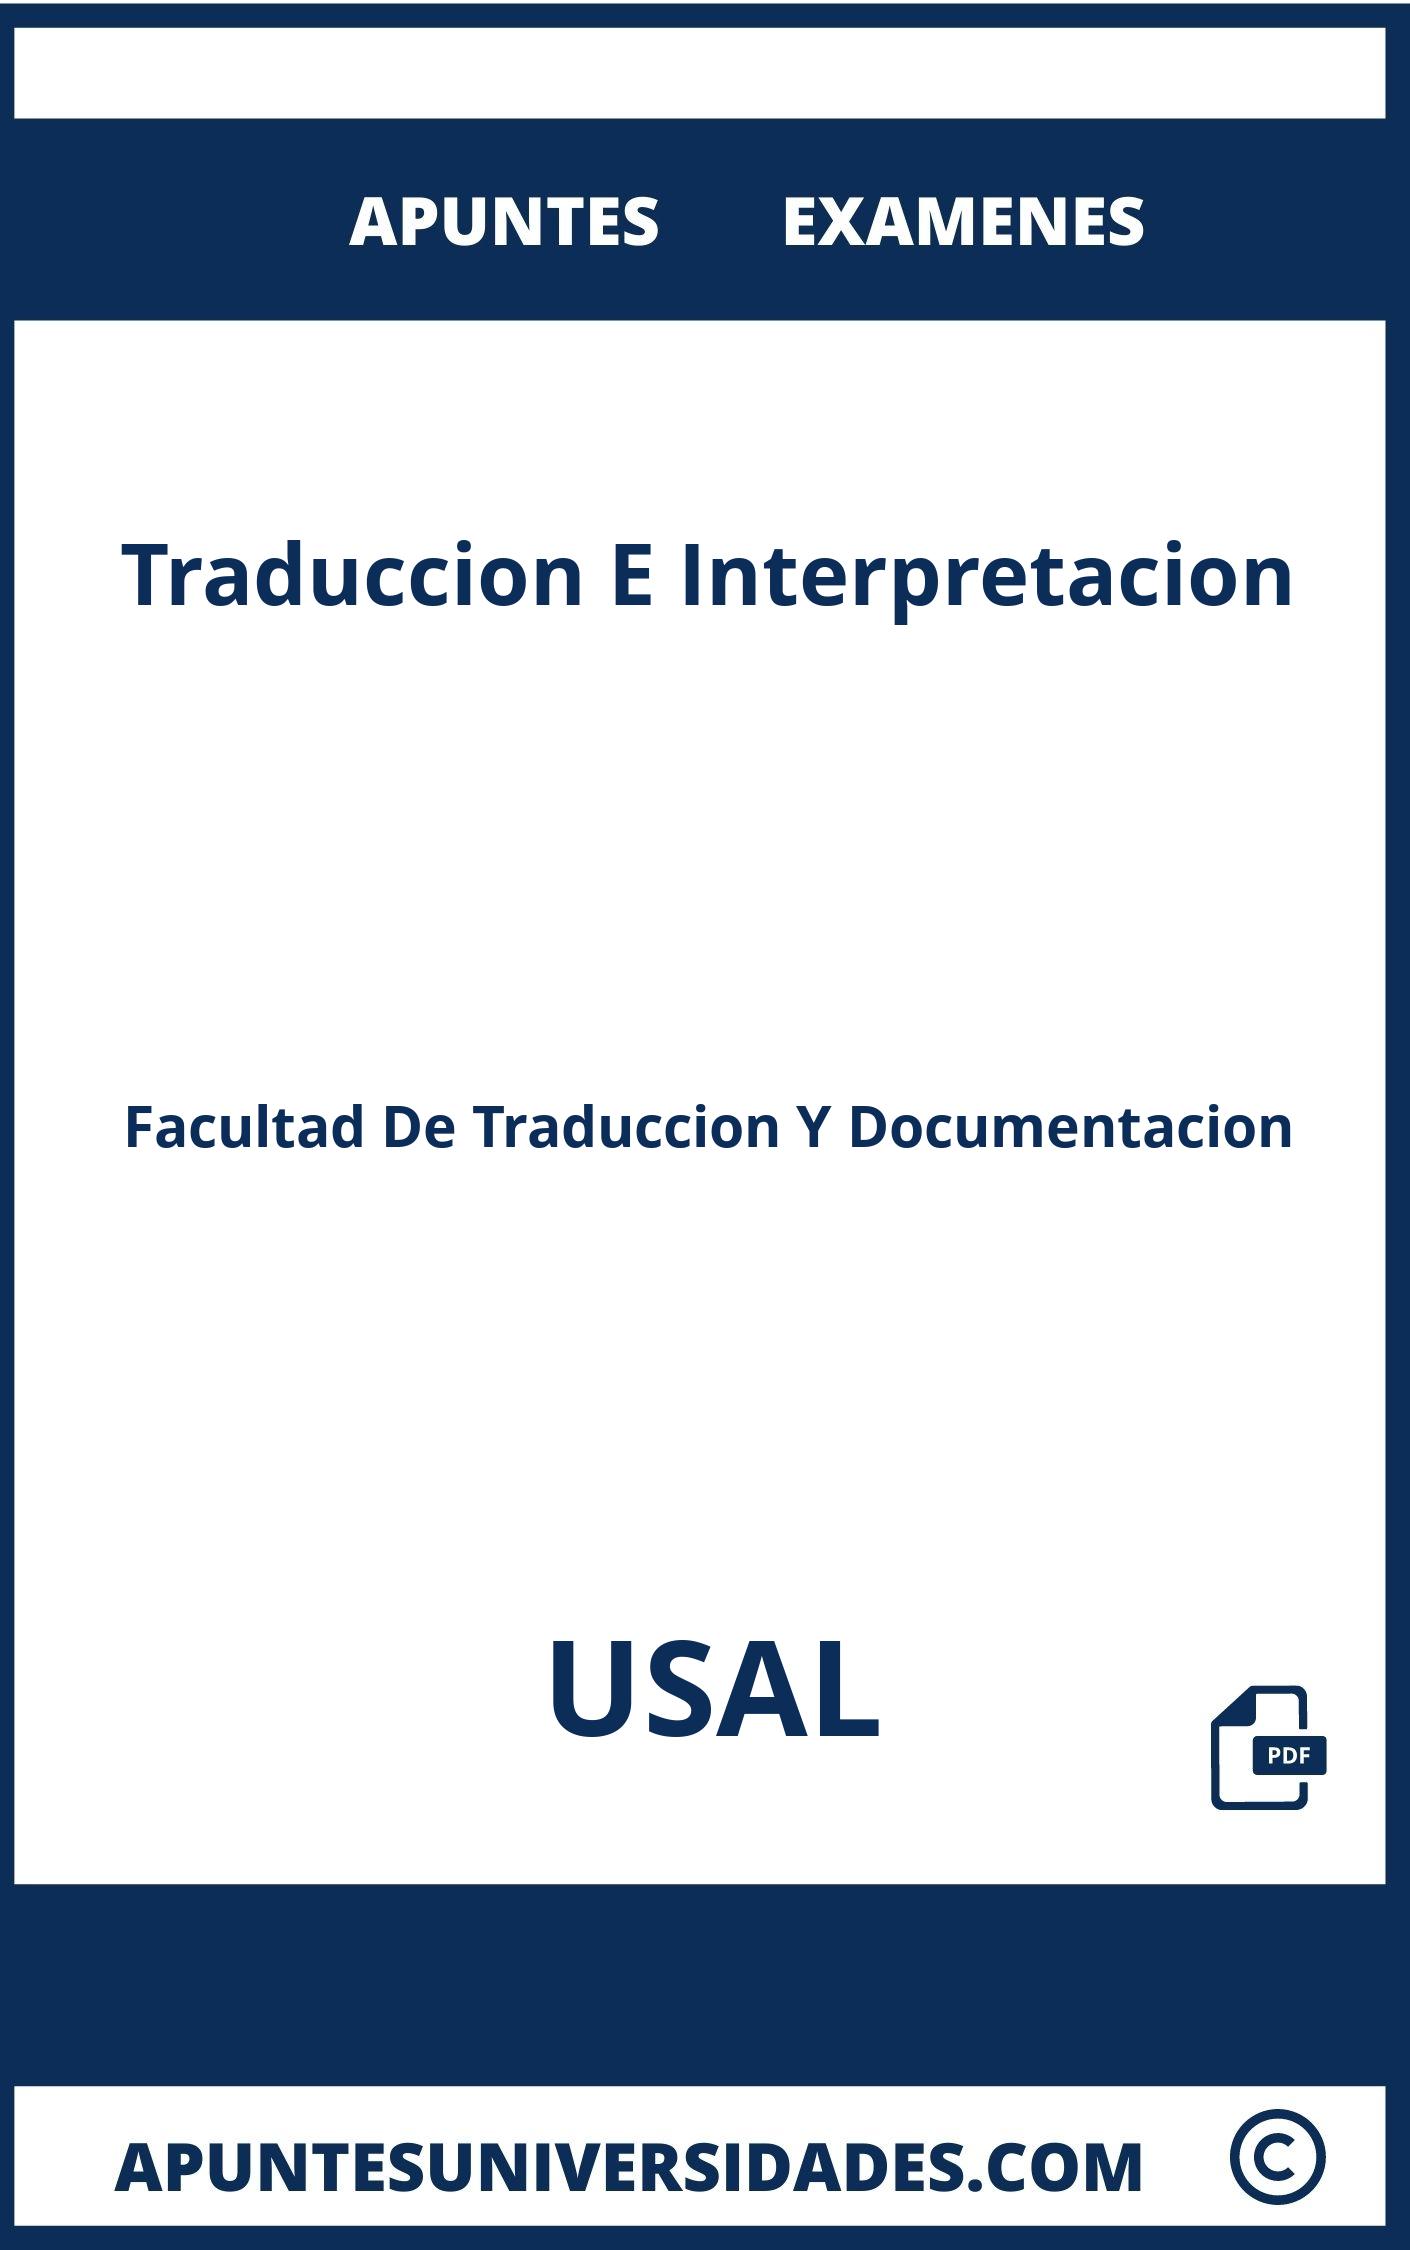 Apuntes y Examenes Traduccion E Interpretacion USAL